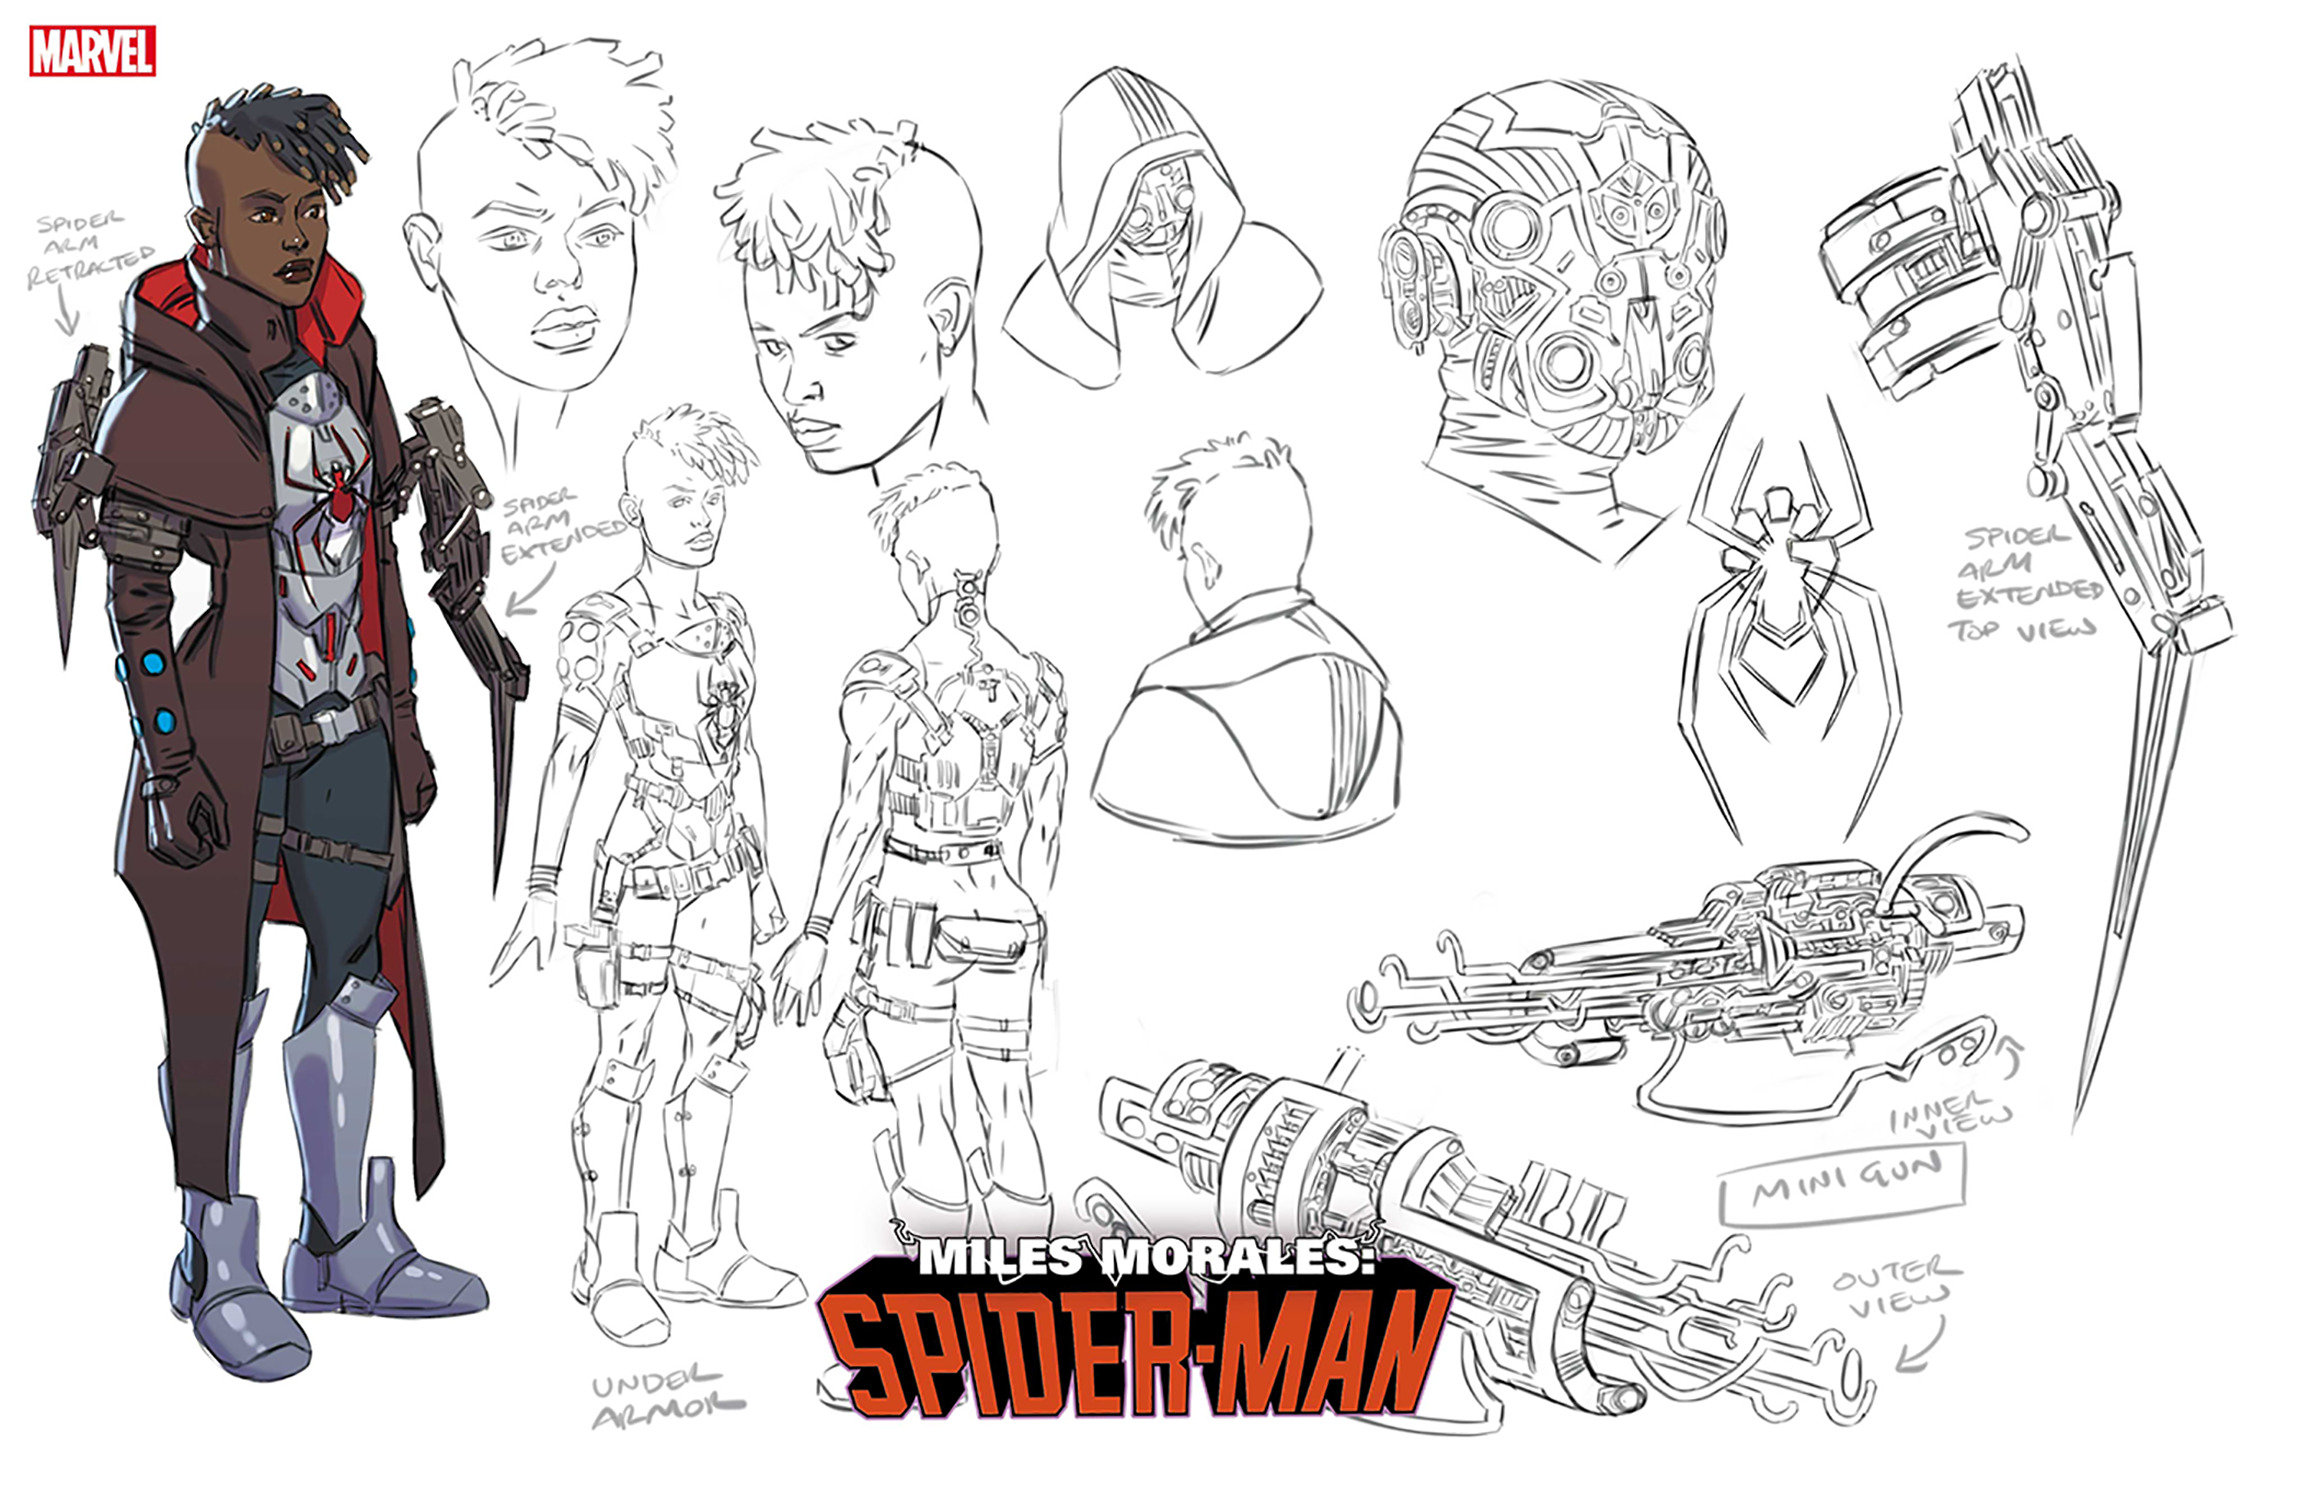 Miles Morales: Spider-Man #38 1 for 10 Incentive Allen Design Variant (2019)